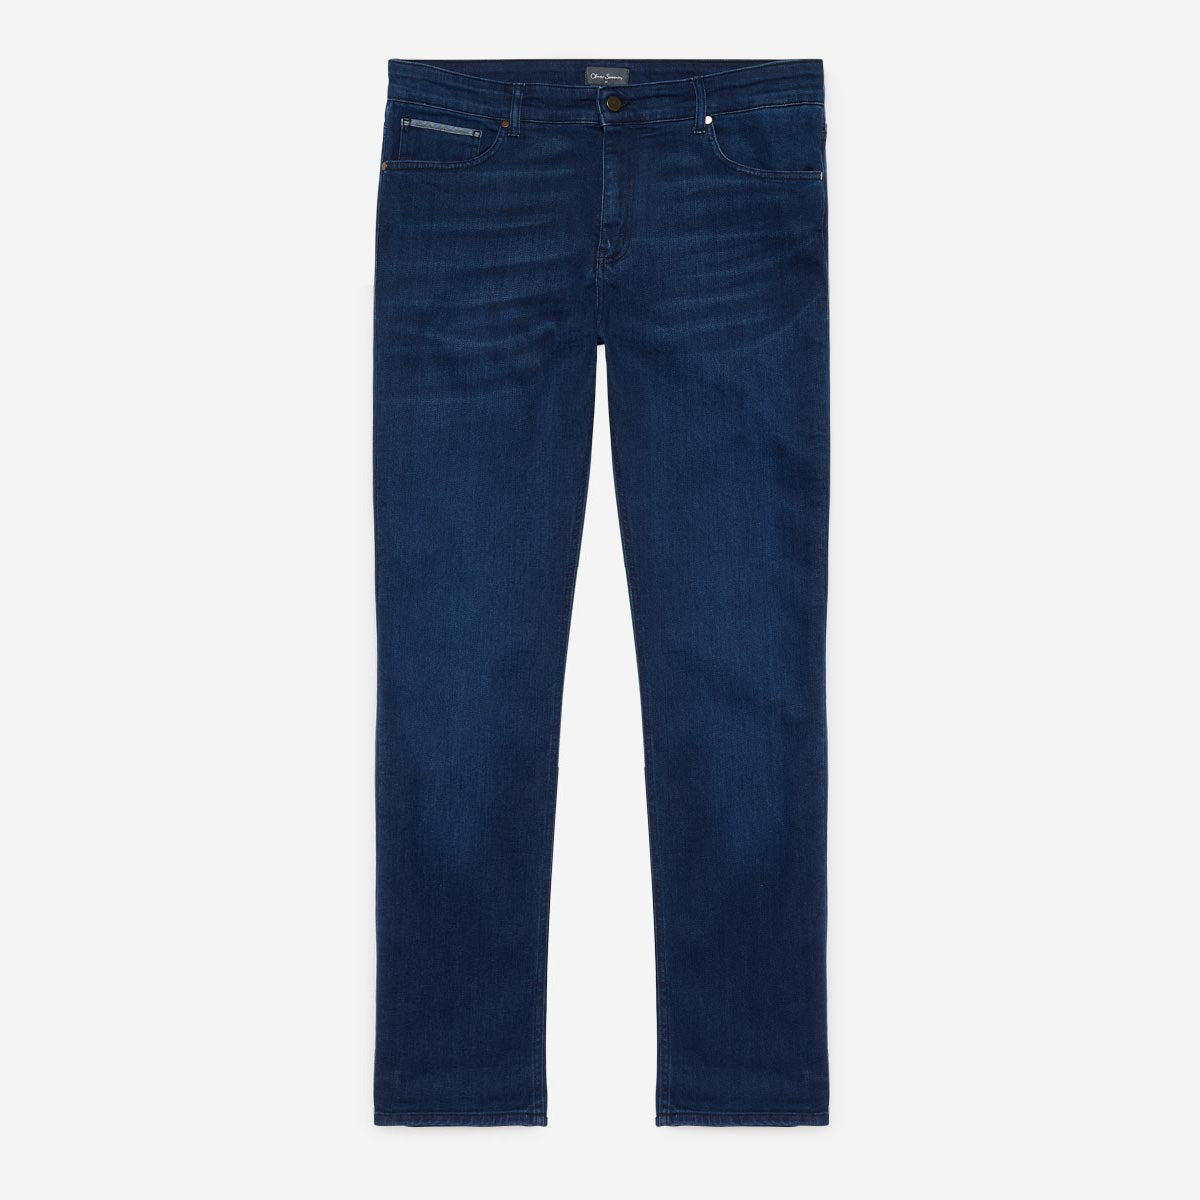 Limerick Blue Jeans | Men's Denim Jeans | Oliver Sweeney